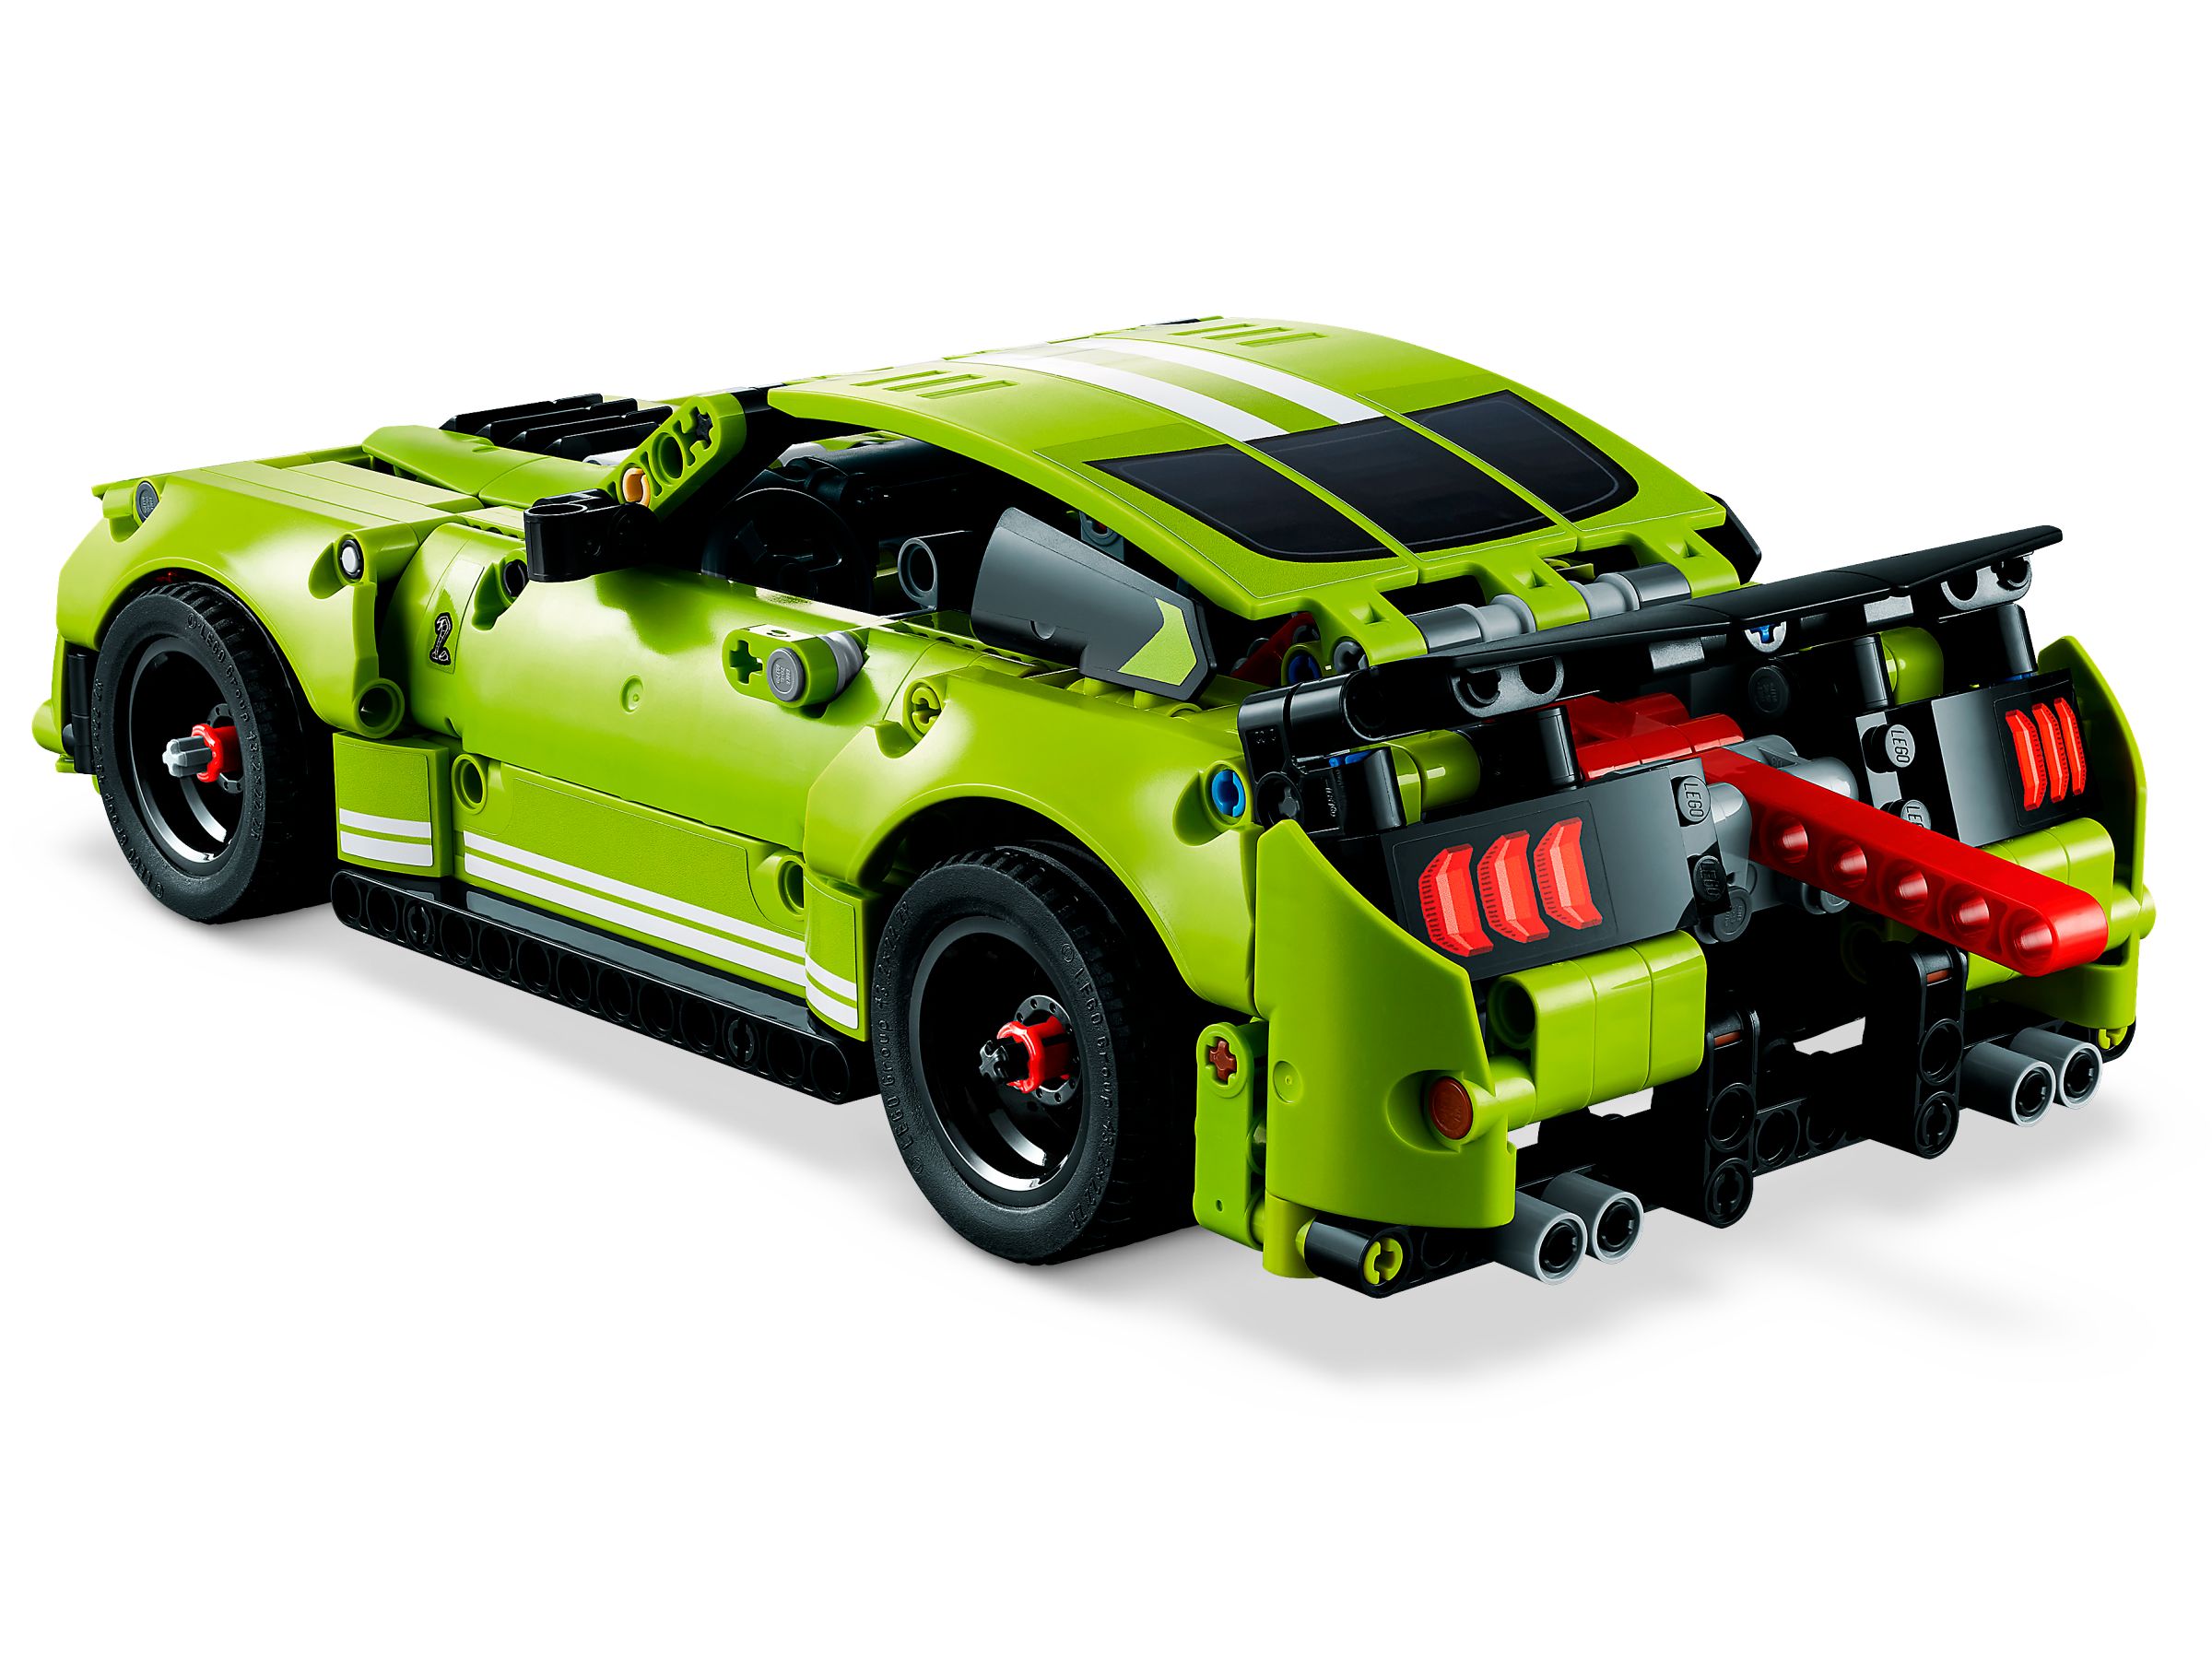 LEGO Technic 42138 Mustang Shelby Cobra LEGO_42138_alt4.jpg